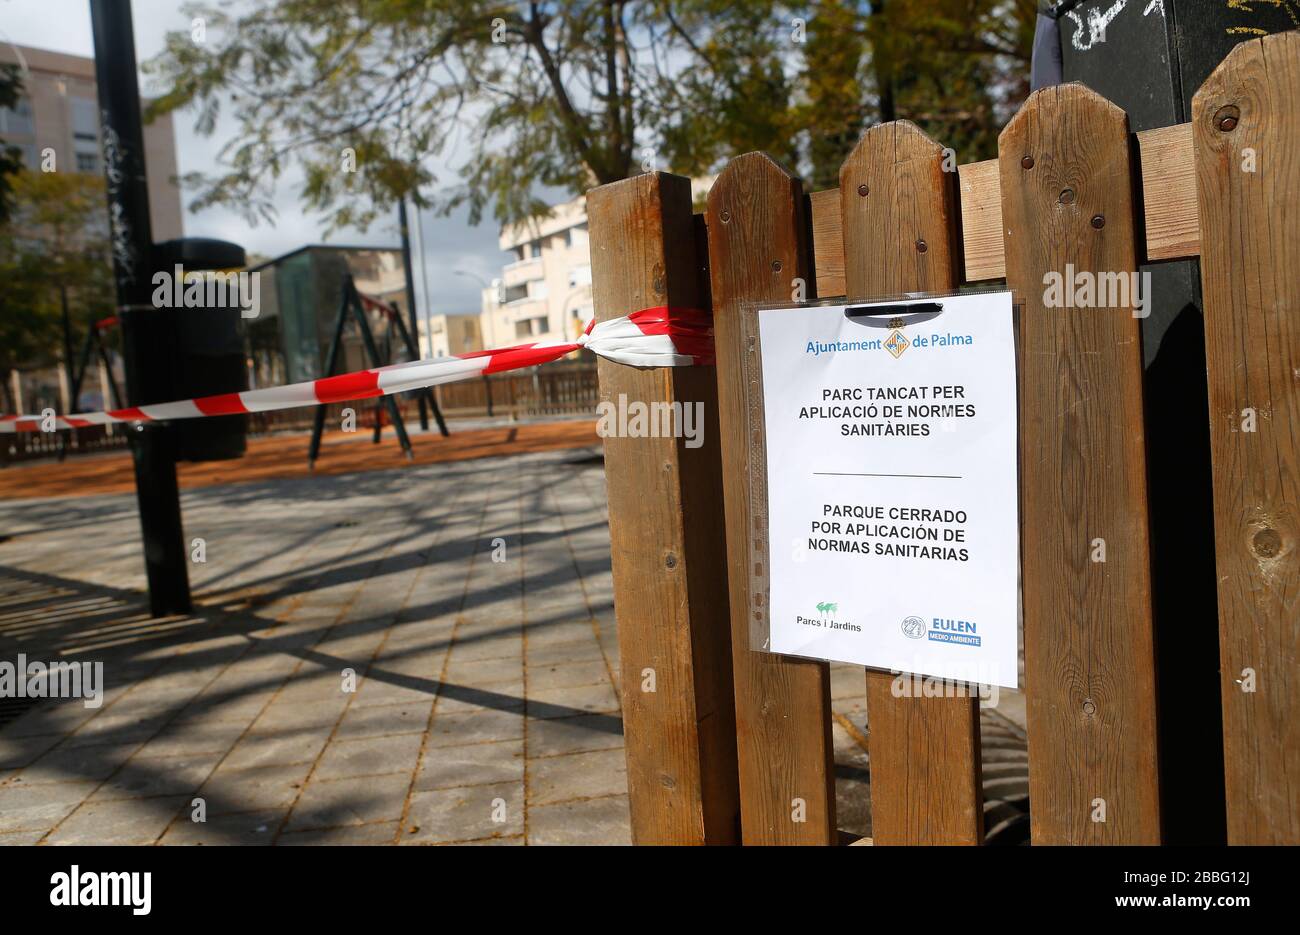 Les parcs pour enfants sont fermés comme une quarantaine est mise après l'épidémie du coronavirus (COVID-19) dans l'île touristique des Baléares de Majorque Banque D'Images